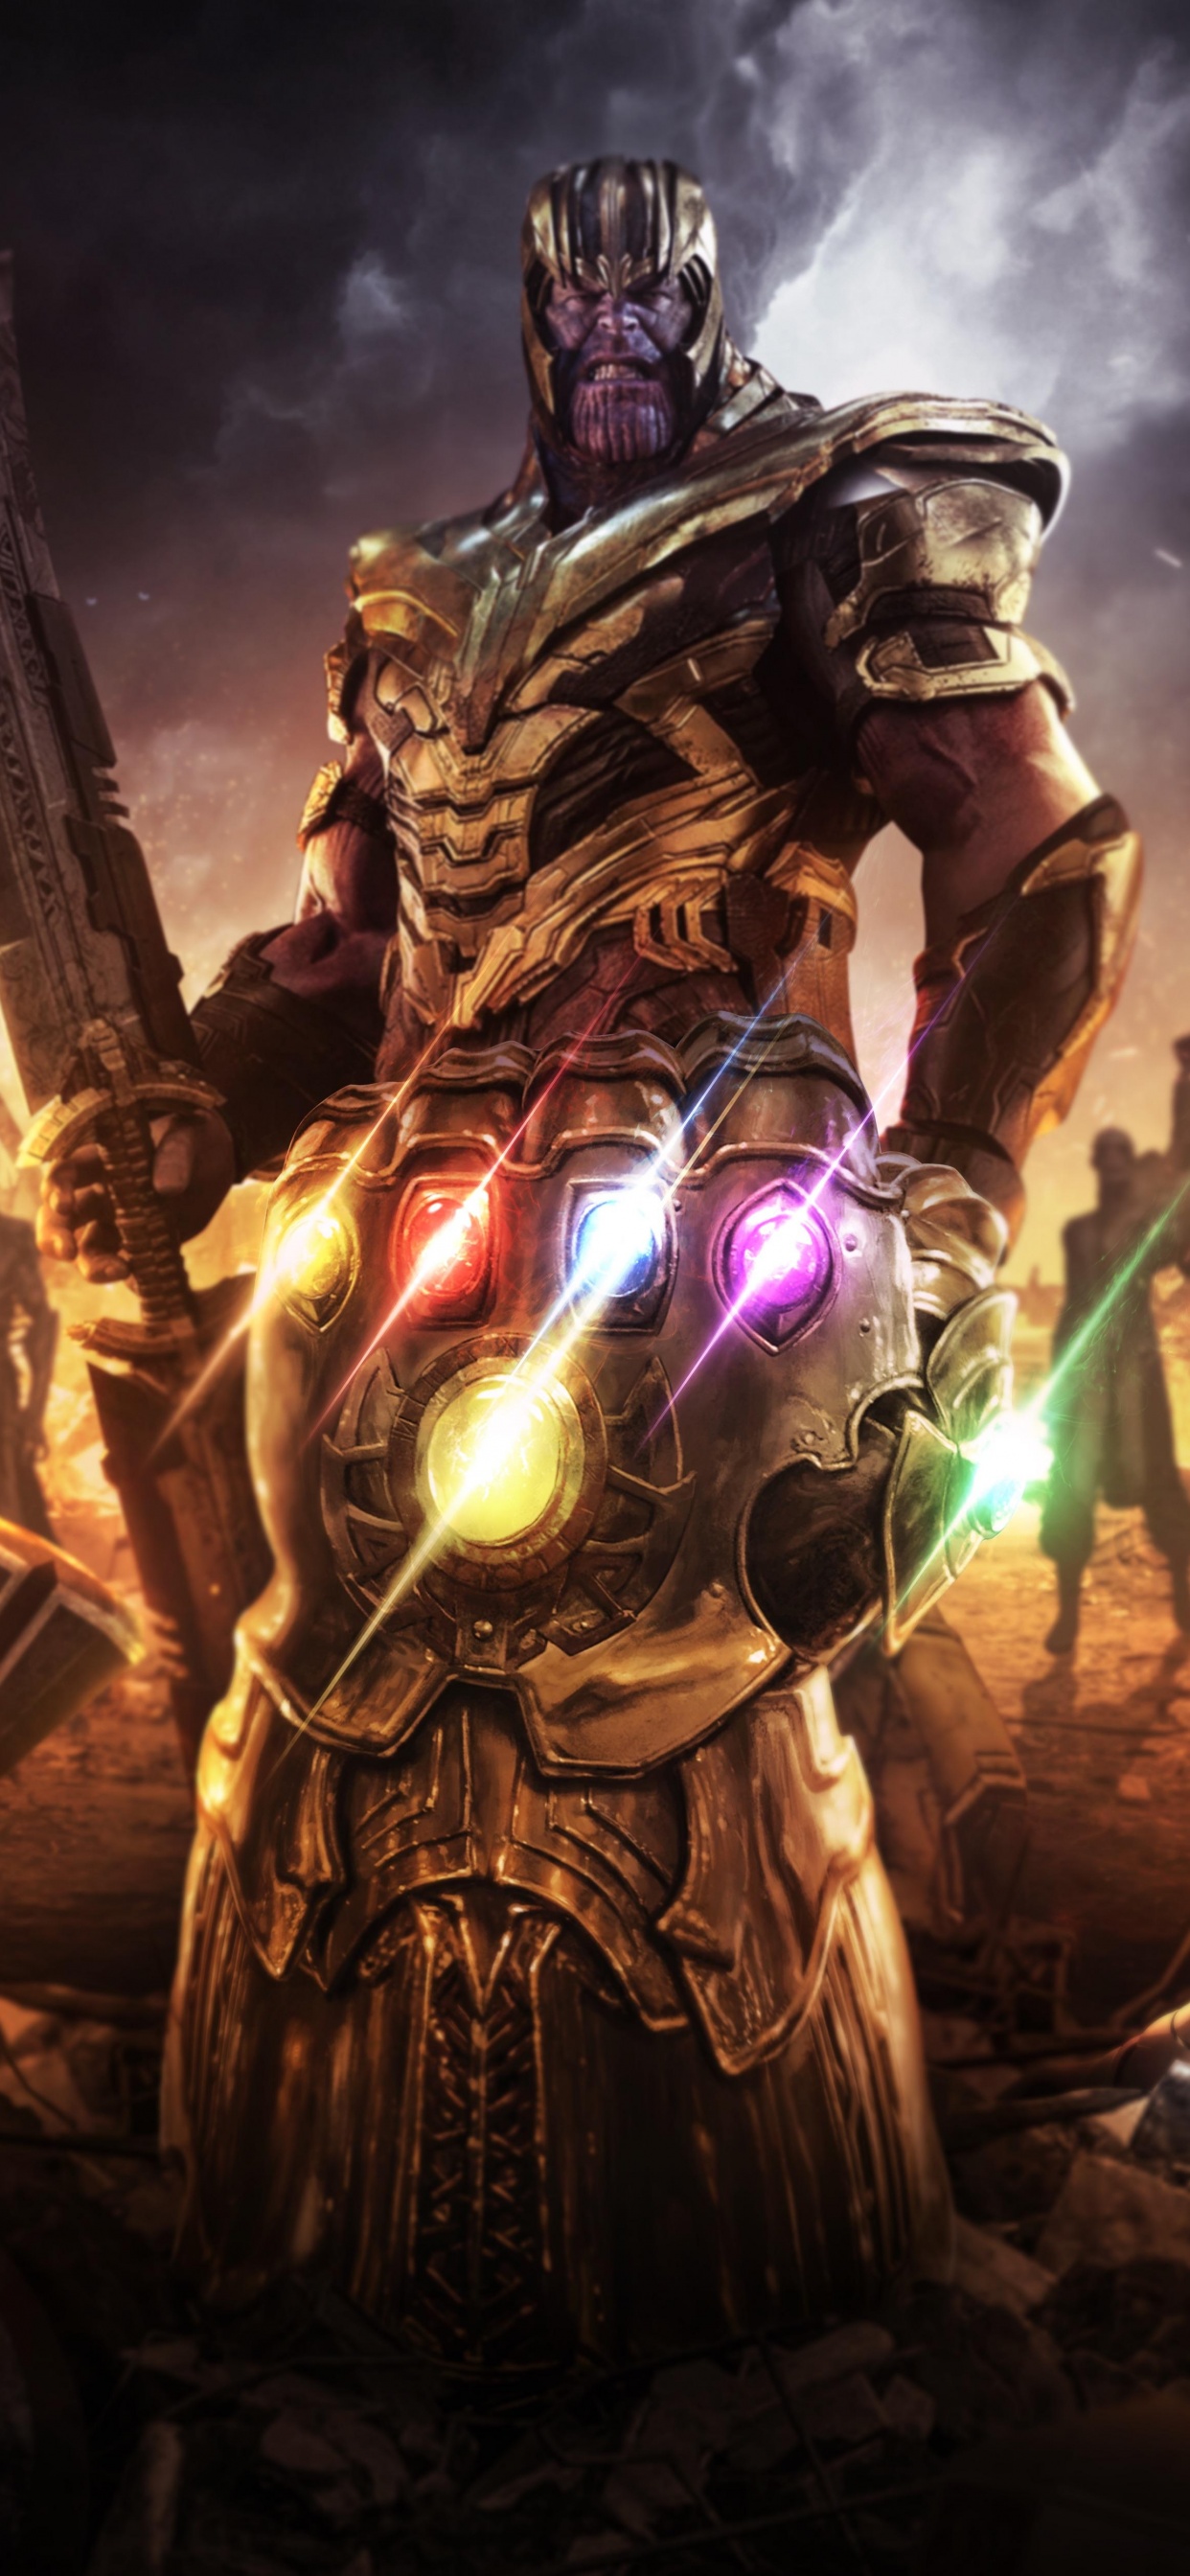 Infinity Gauntlet Wallpaper 4K, Thanos, Avengers: Endgame